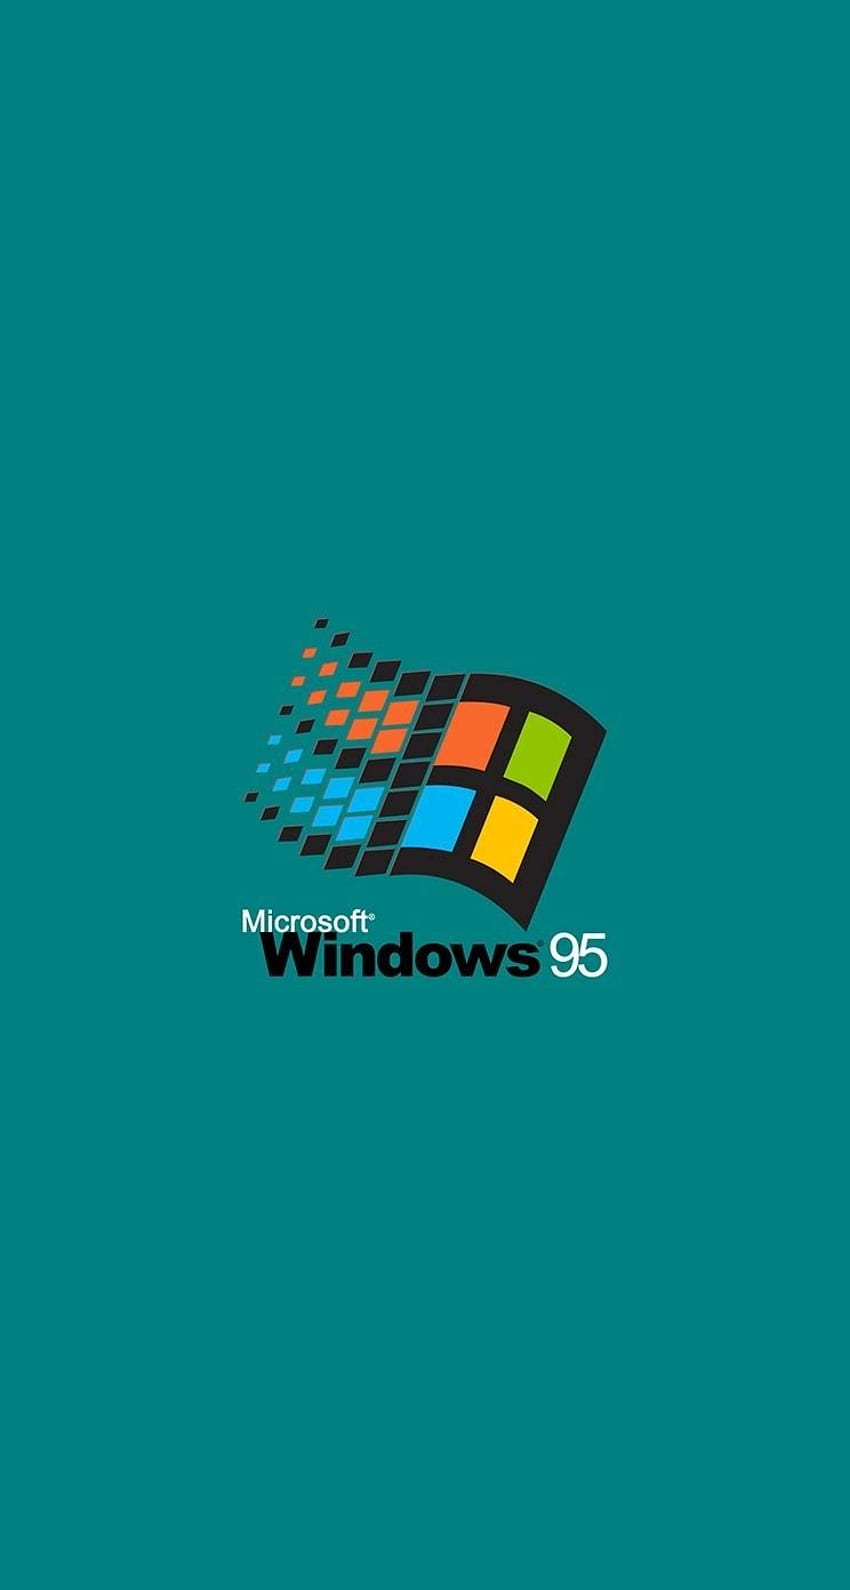 Màn hình khóa Windows Phone với hình nền Windows 95, đem lại cho bạn những ký ức về tuổi thơ với màn hình khóa mà bạn sẽ yêu thích. Hình ảnh sẽ cho bạn một phong cách hoàn toàn mới trên điện thoại của mình. Xem ảnh liên quan để có trải nghiệm!